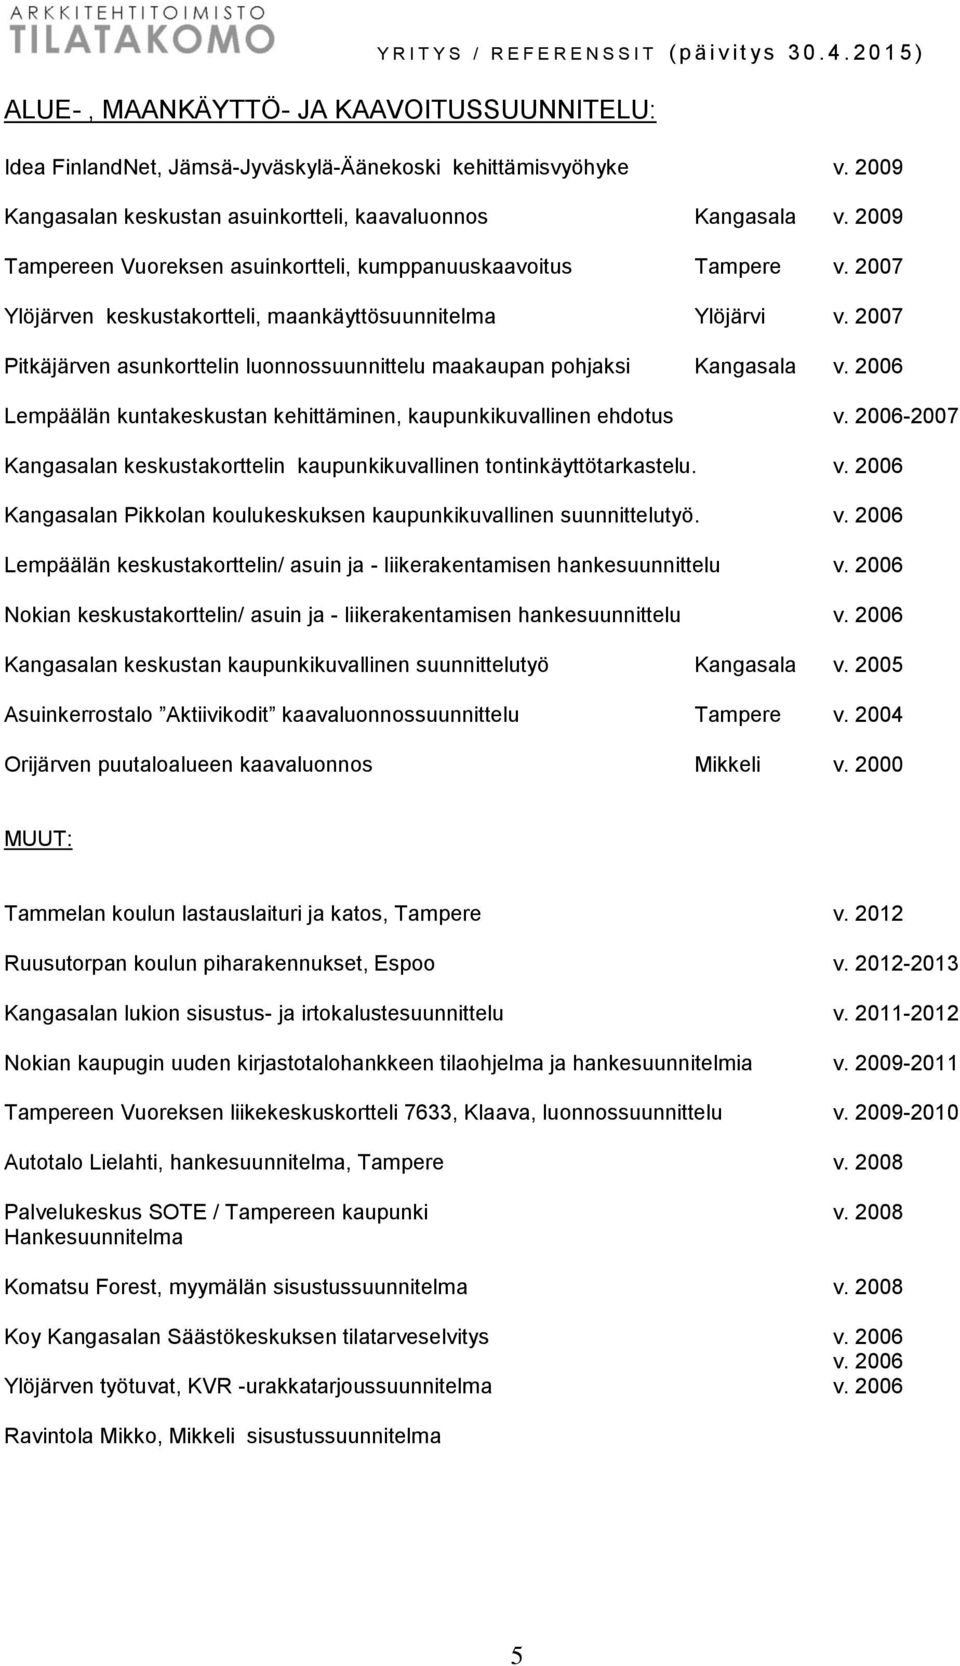 2007 Pitkäjärven asunkorttelin luonnossuunnittelu maakaupan pohjaksi Kangasala v. 2006 Lempäälän kuntakeskustan kehittäminen, kaupunkikuvallinen ehdotus v.